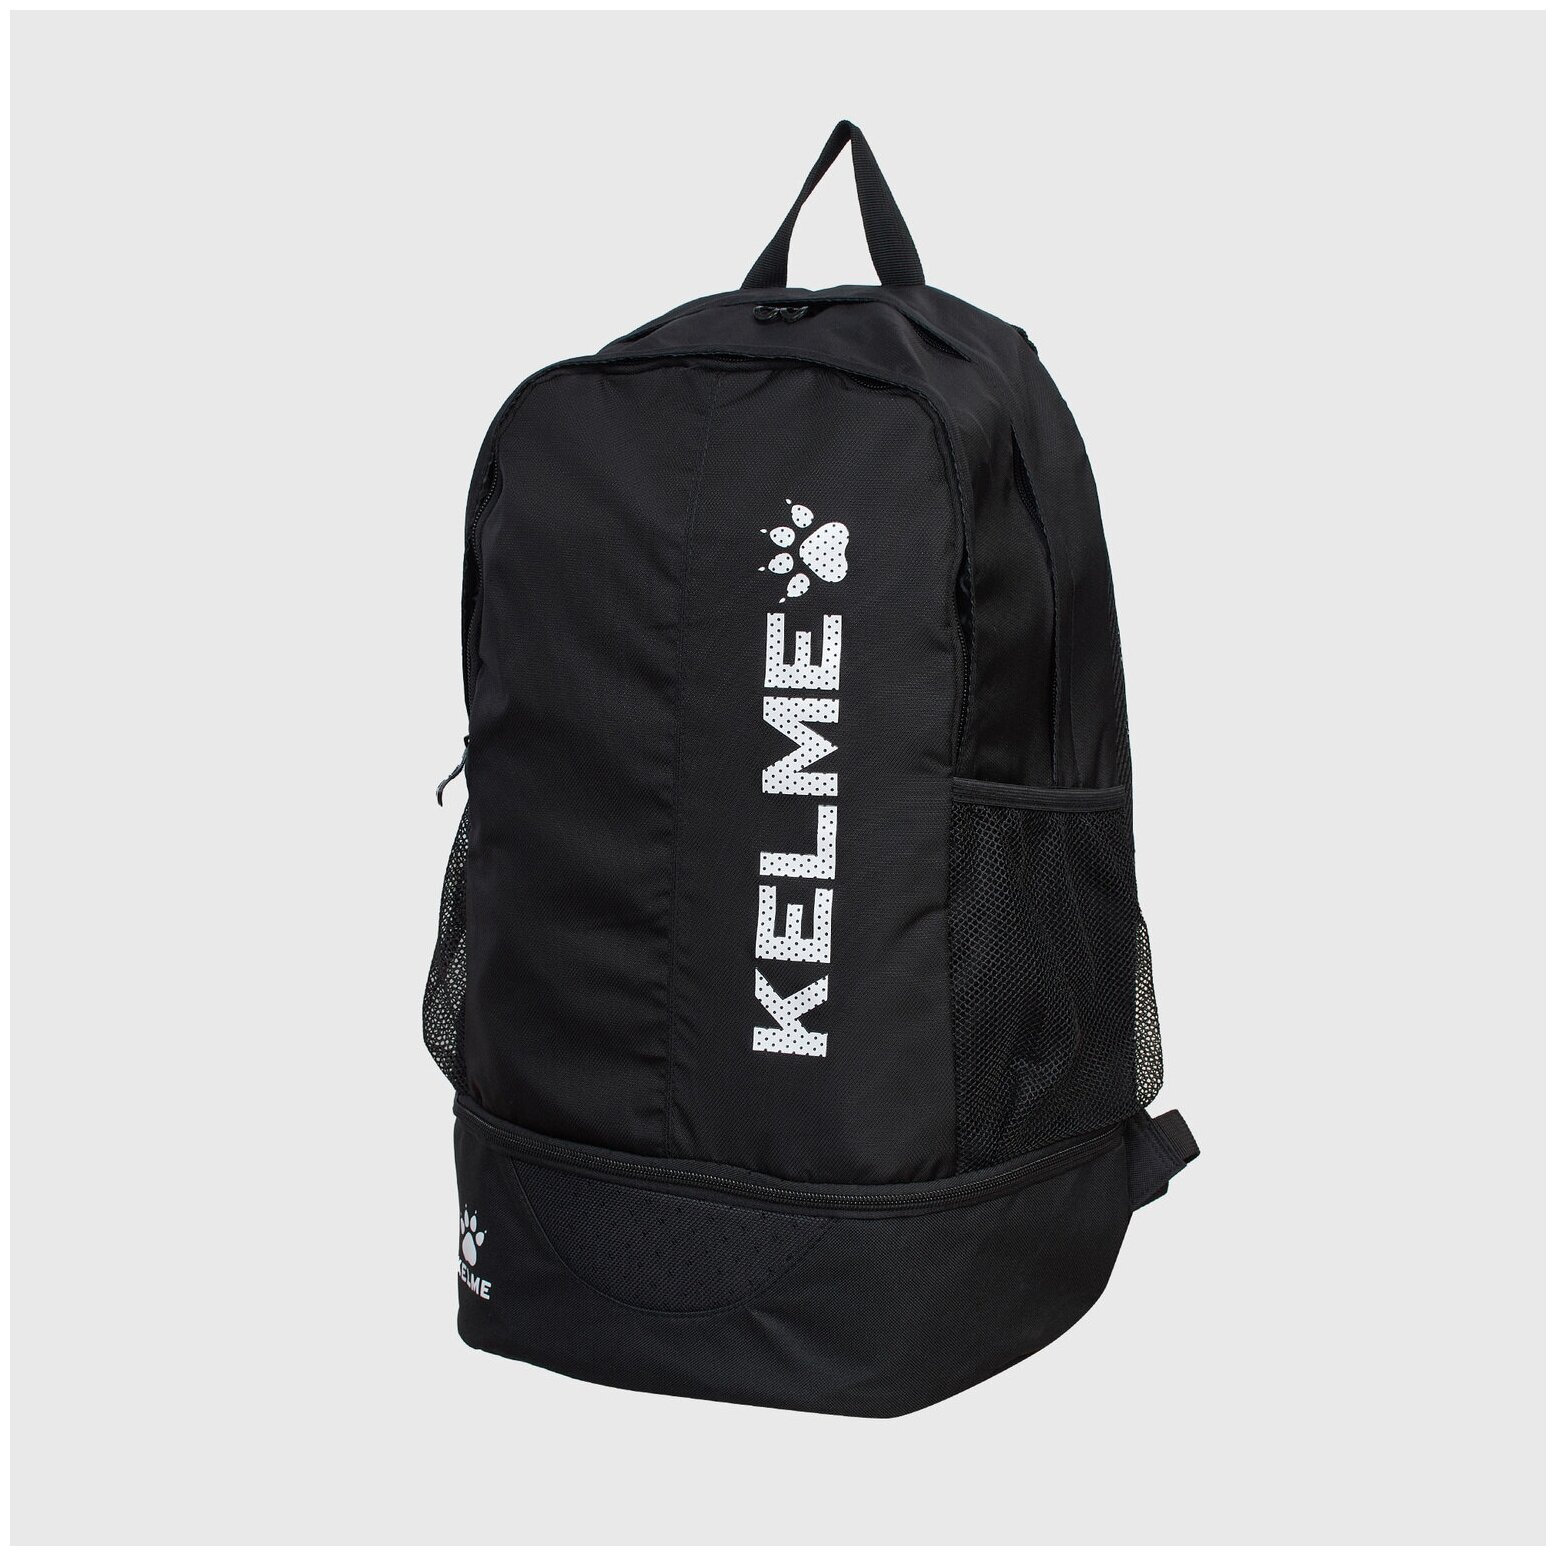 Рюкзак Kelme Backpack 9891020-003, размер one size, Черный